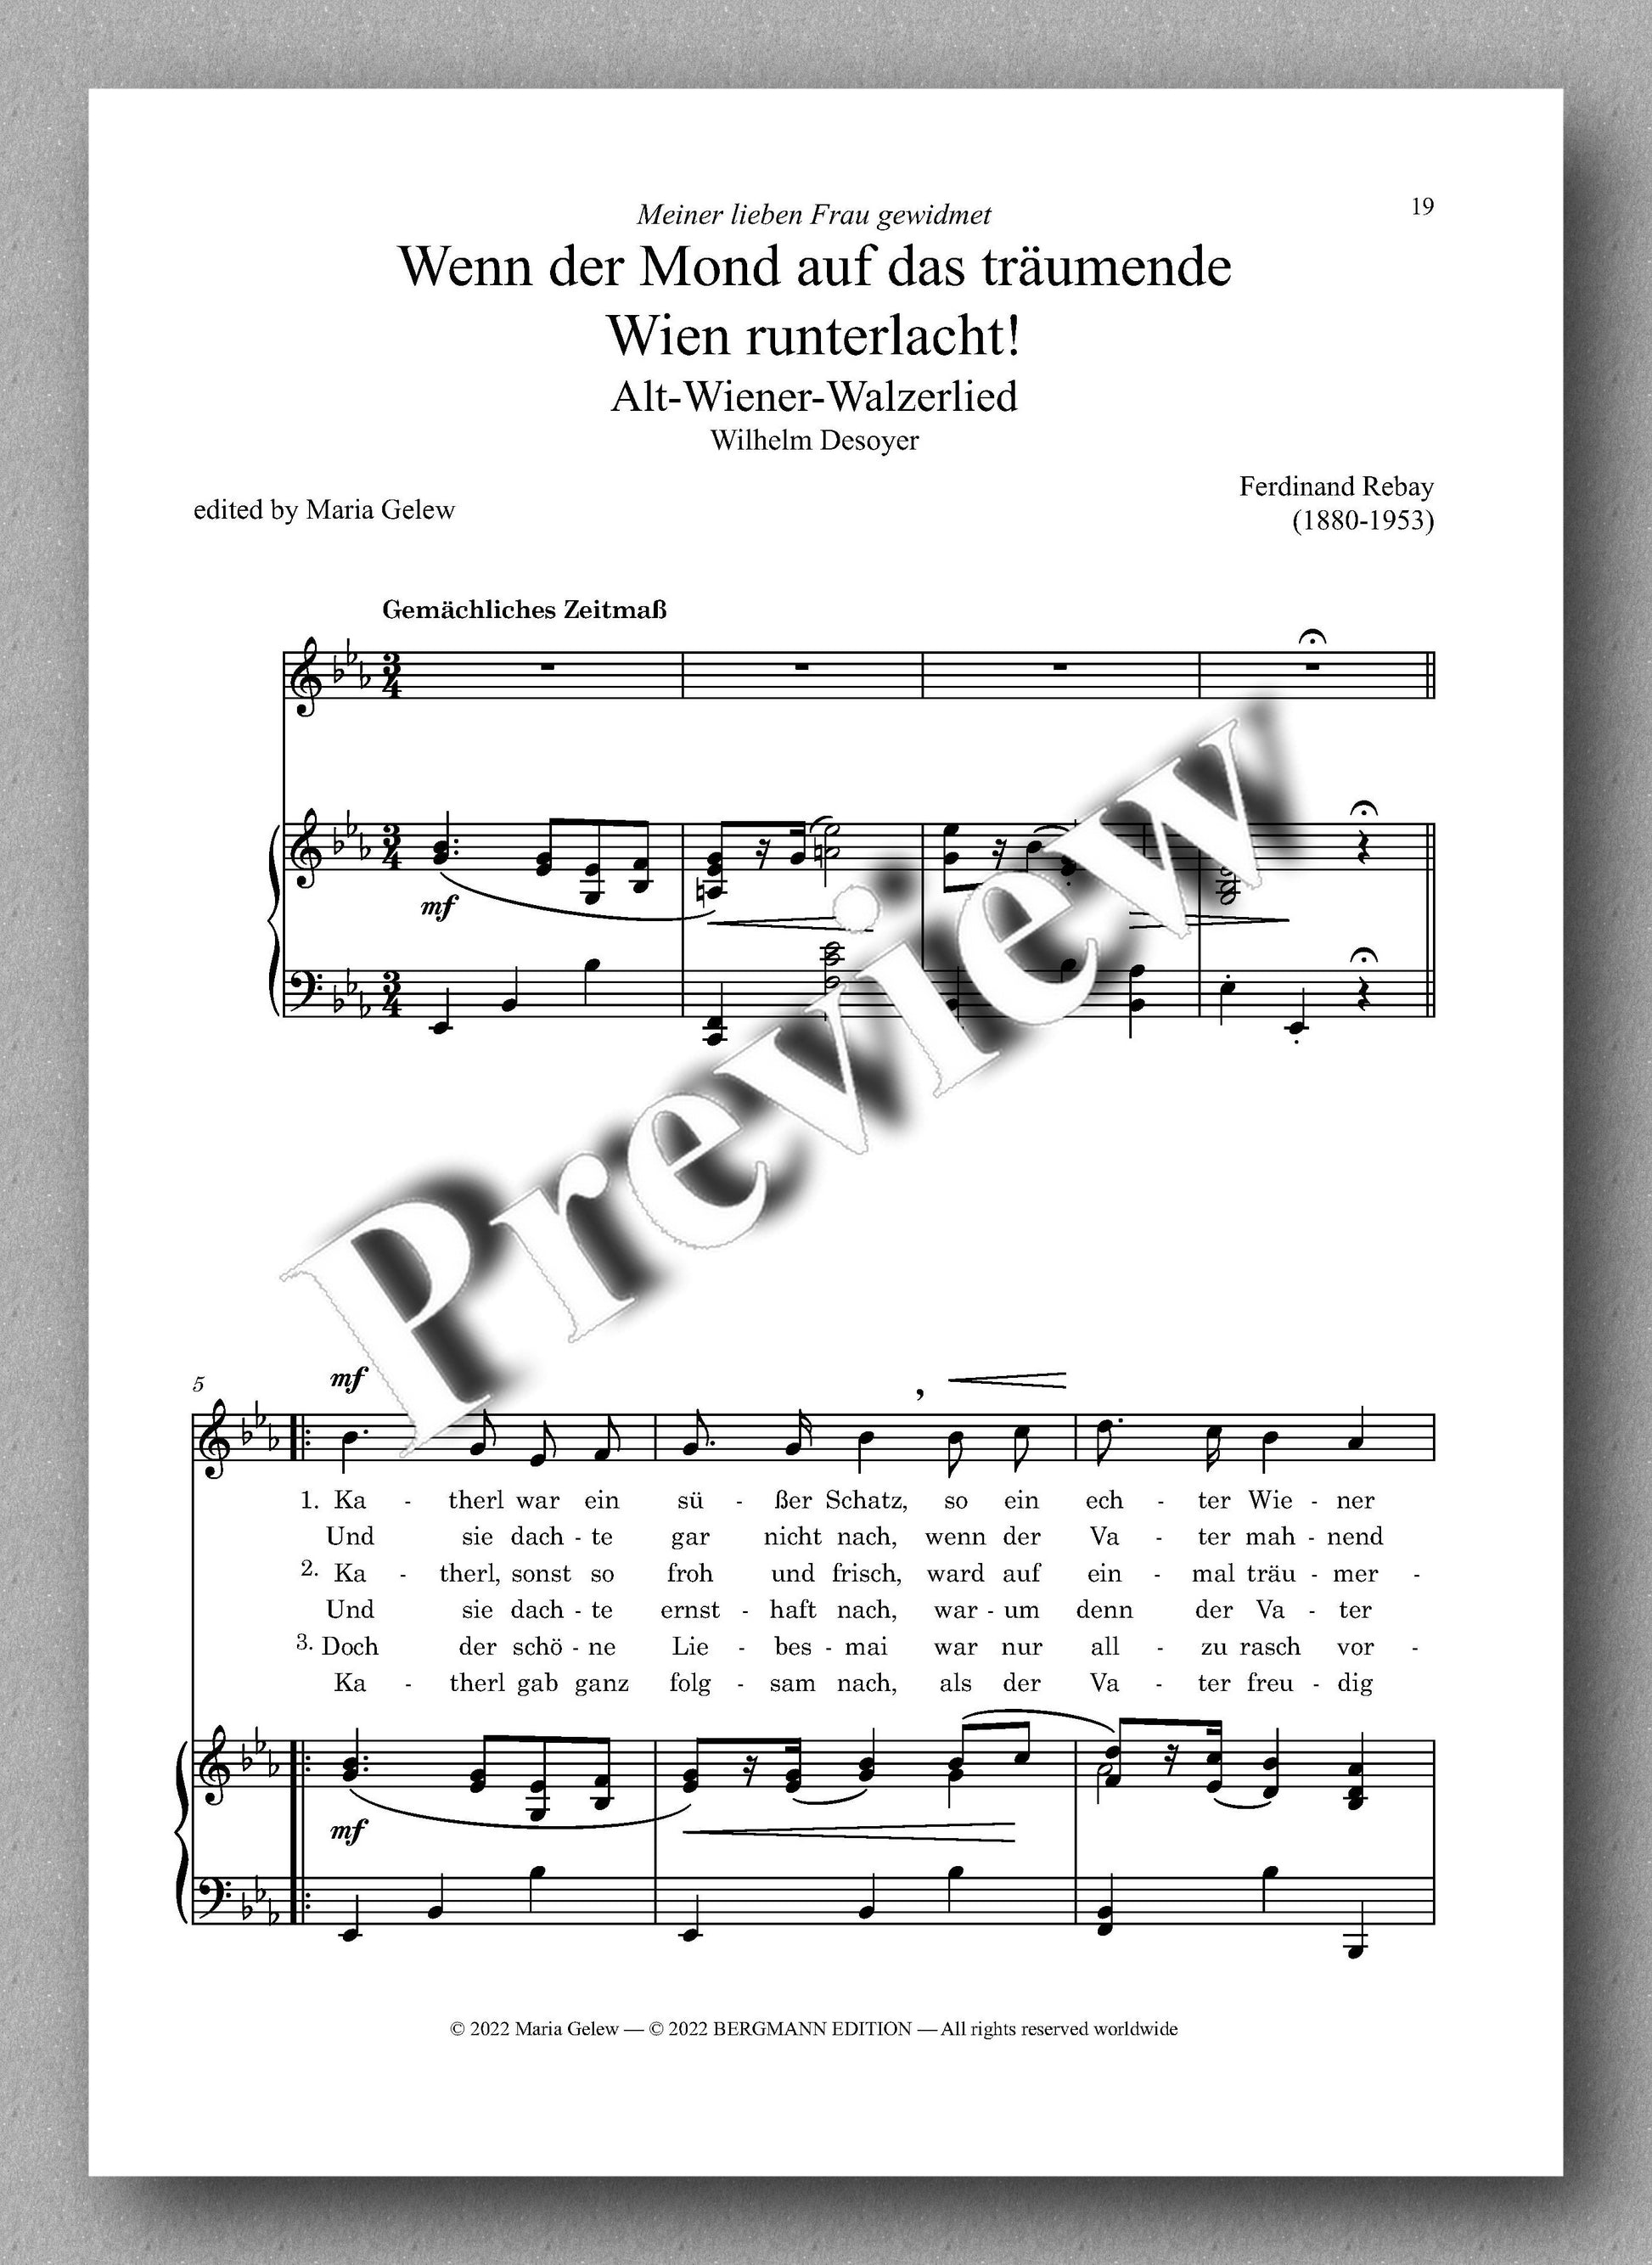 Ferdinand Rebay, Lieder nach Gedichten von Wilhelm Desoyer - preview of the music score 4